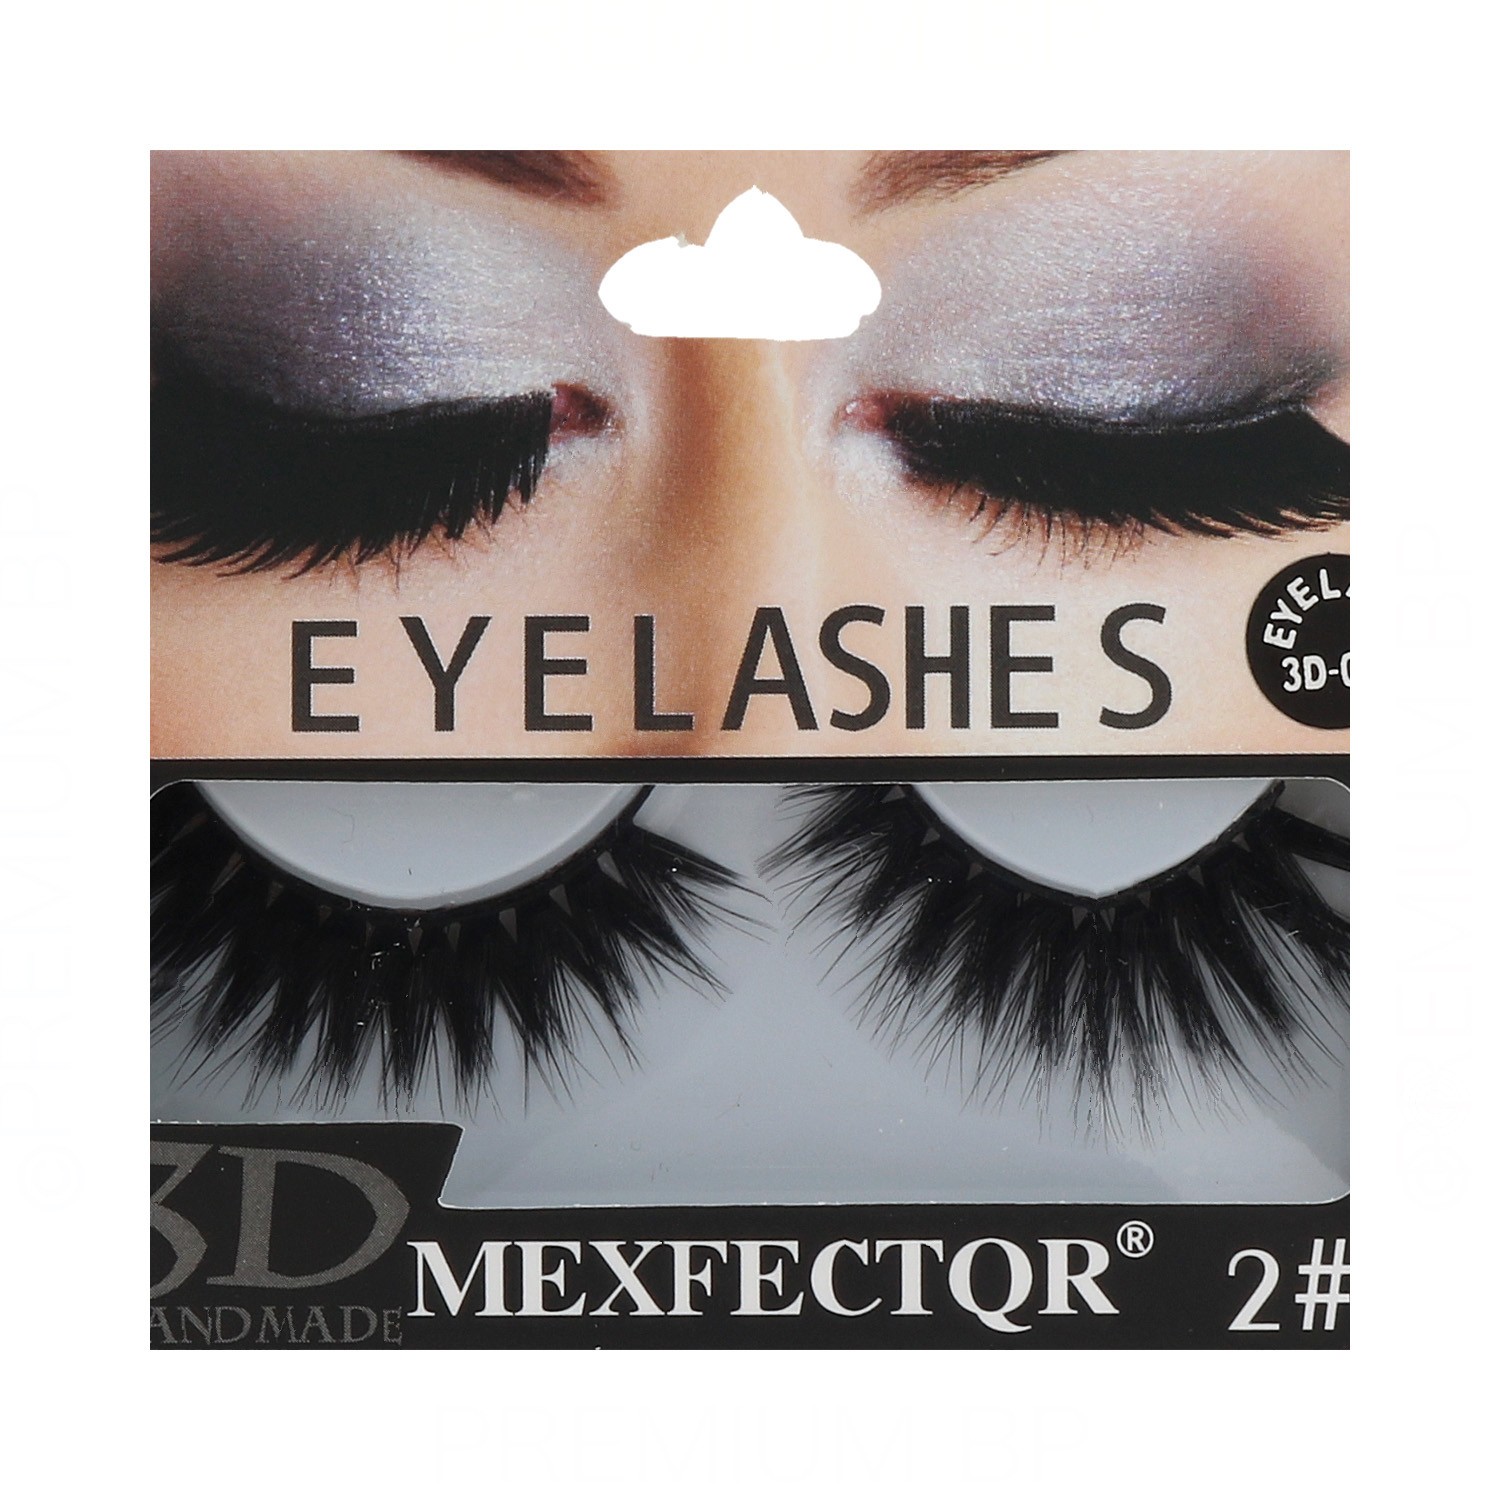 Lb Eyelashes 3D Mexfector (3D-014)